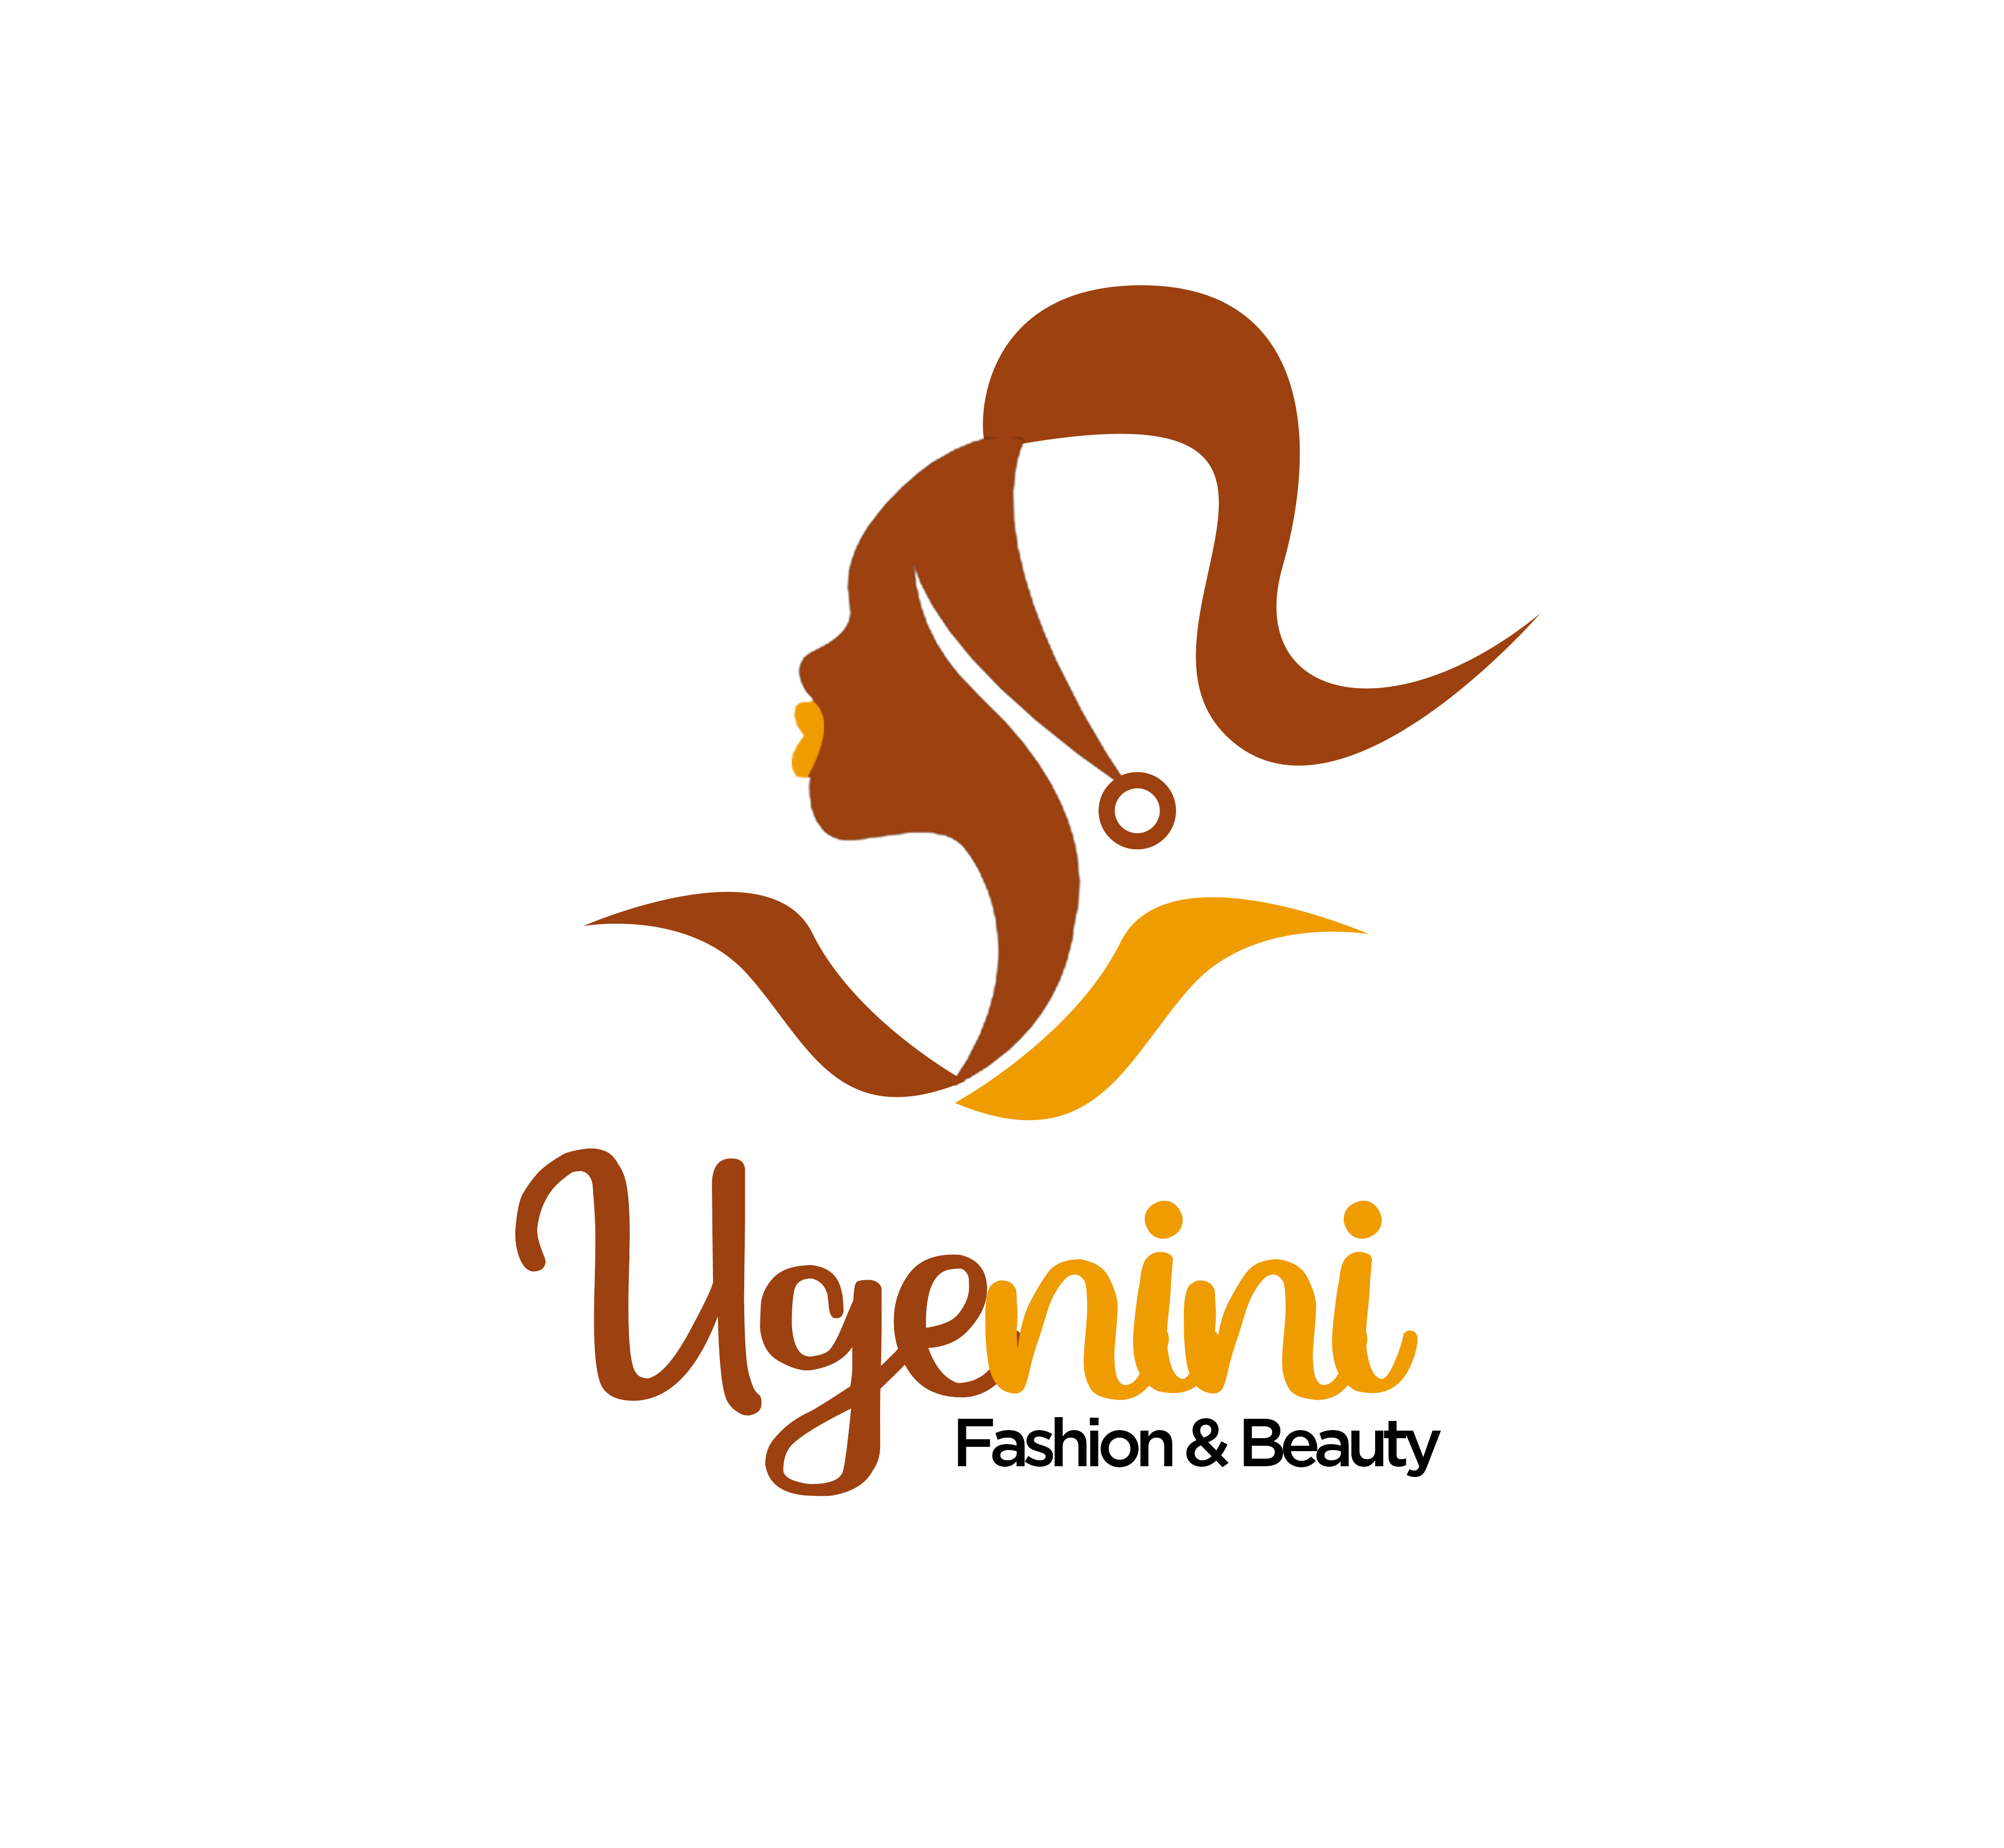 Logo of Ugenini